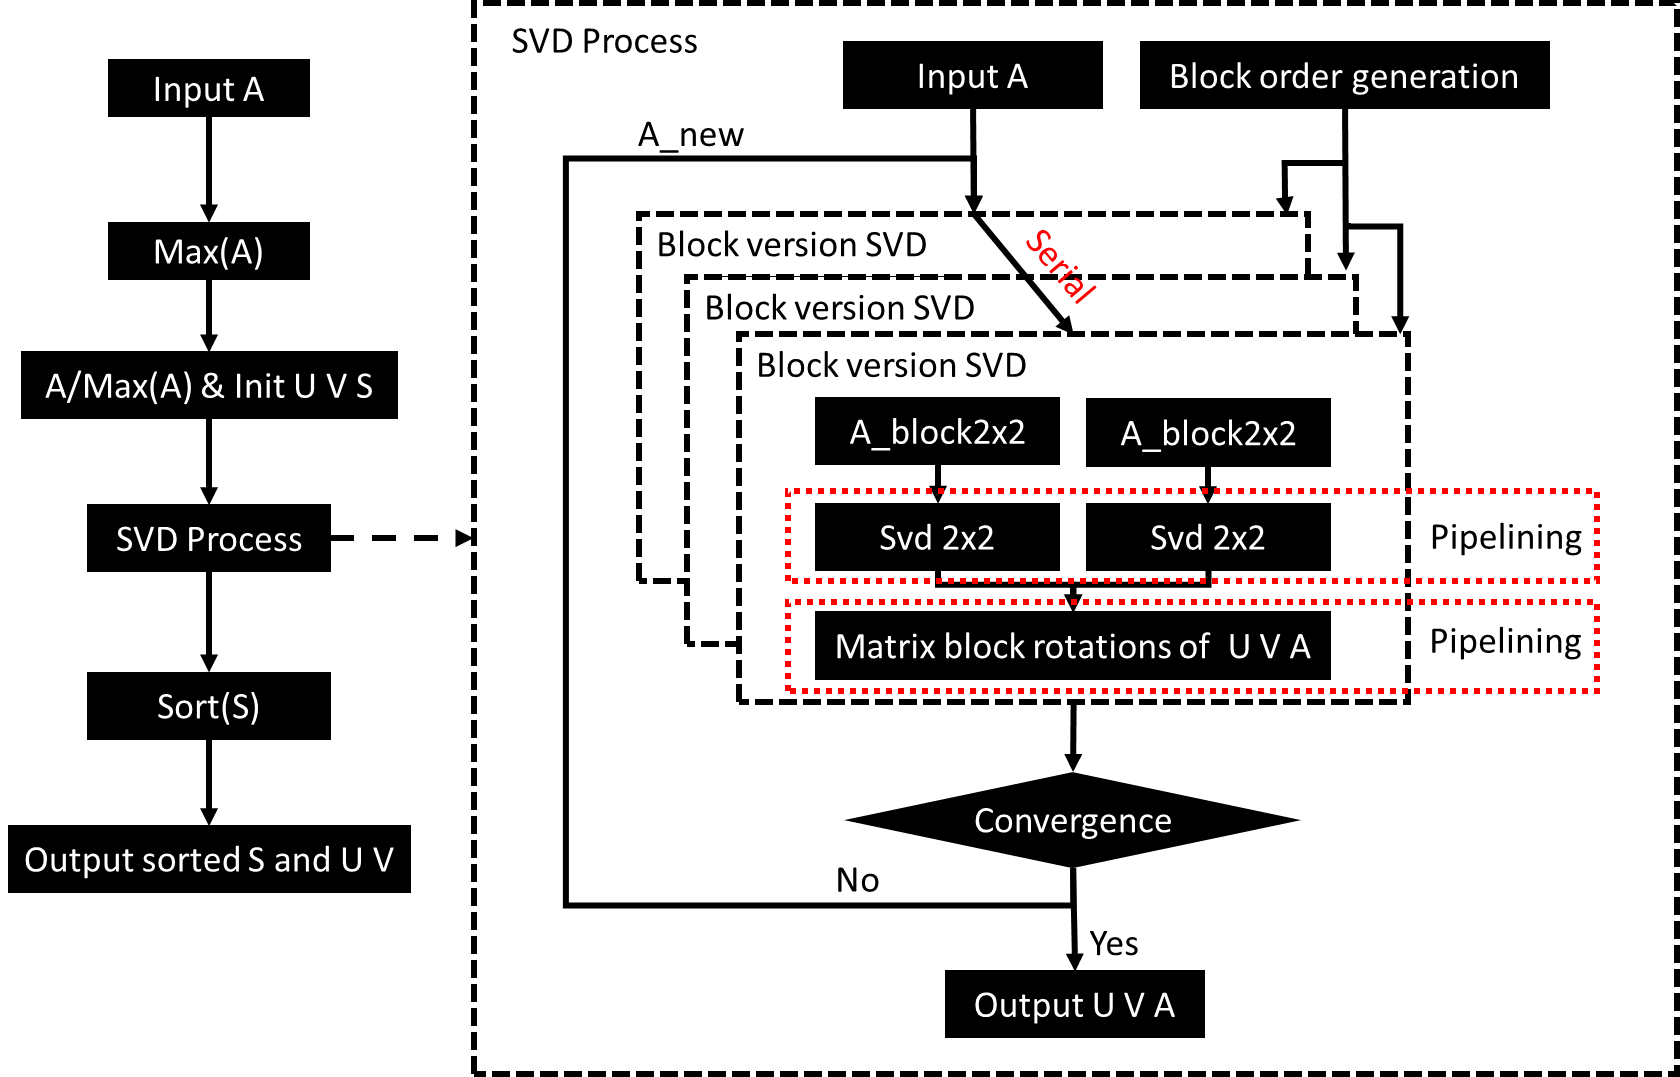 SVD workflow in FPGA